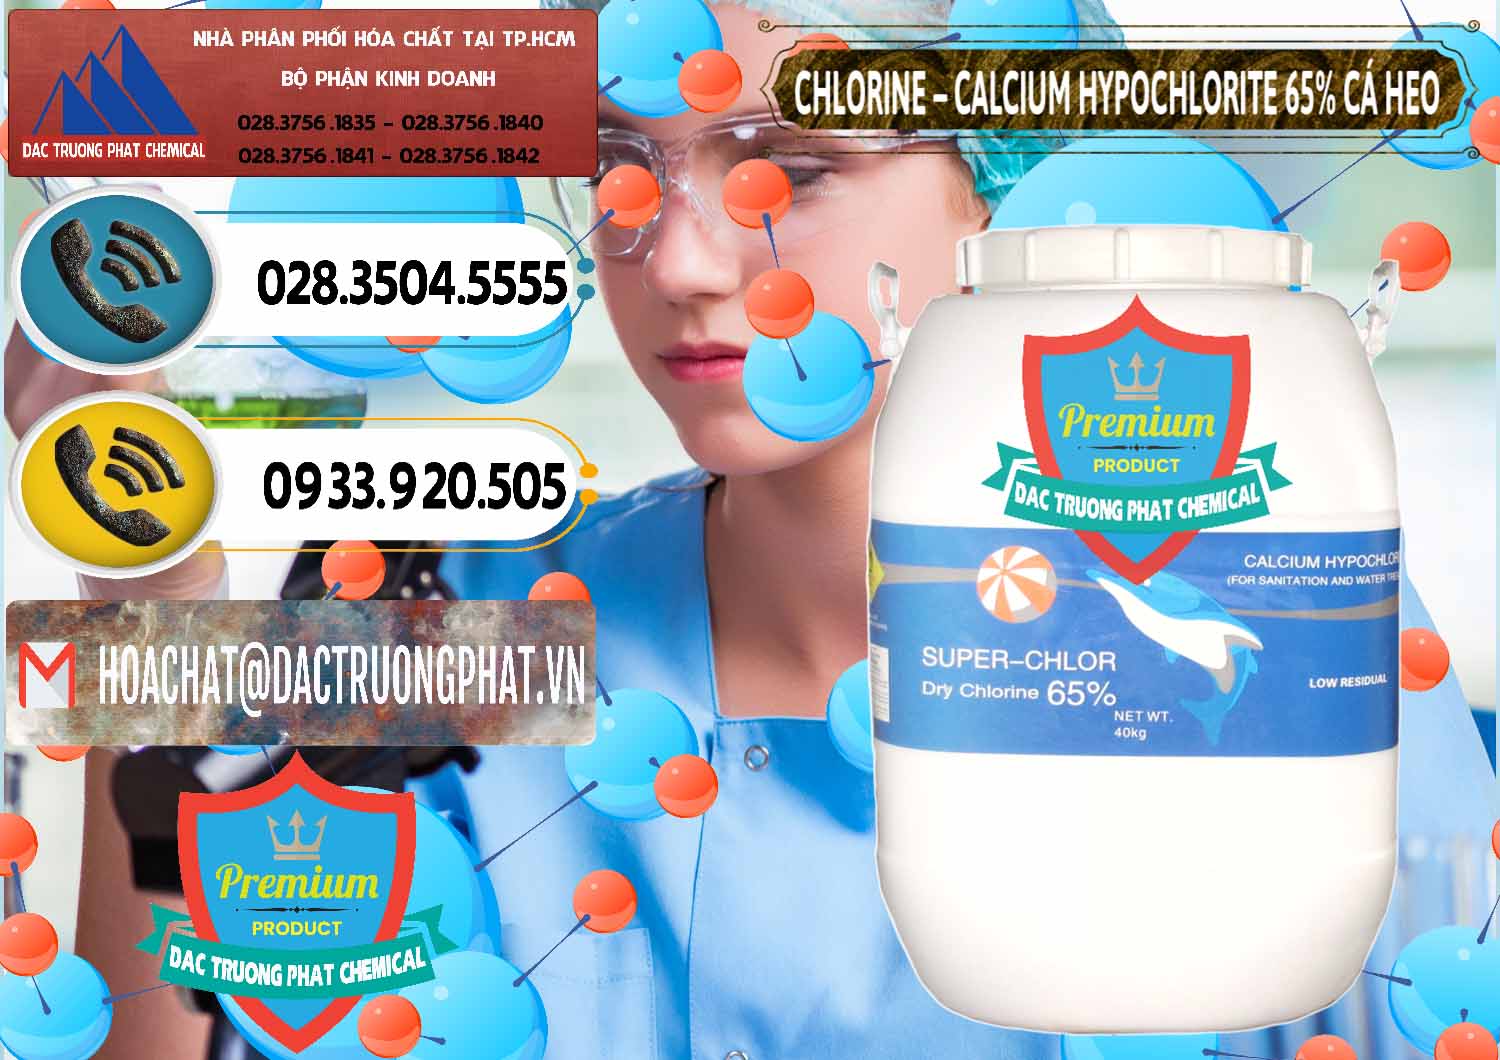 Nơi cung ứng & bán Clorin - Chlorine Cá Heo 65% Trung Quốc China - 0053 - Cty kinh doanh _ cung cấp hóa chất tại TP.HCM - hoachatdetnhuom.vn